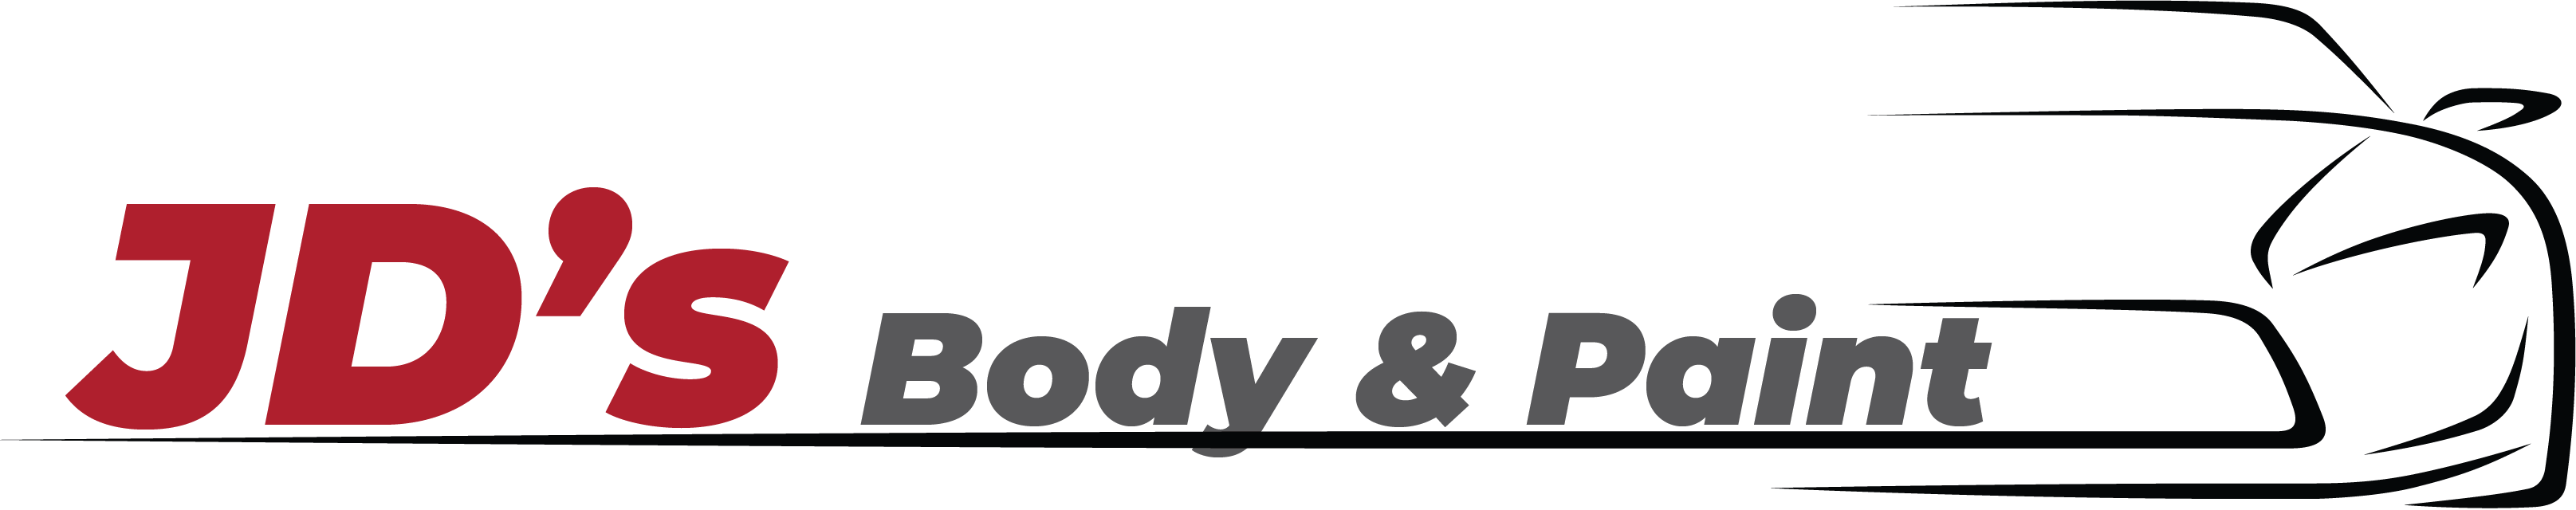 Knights Body Shop logo